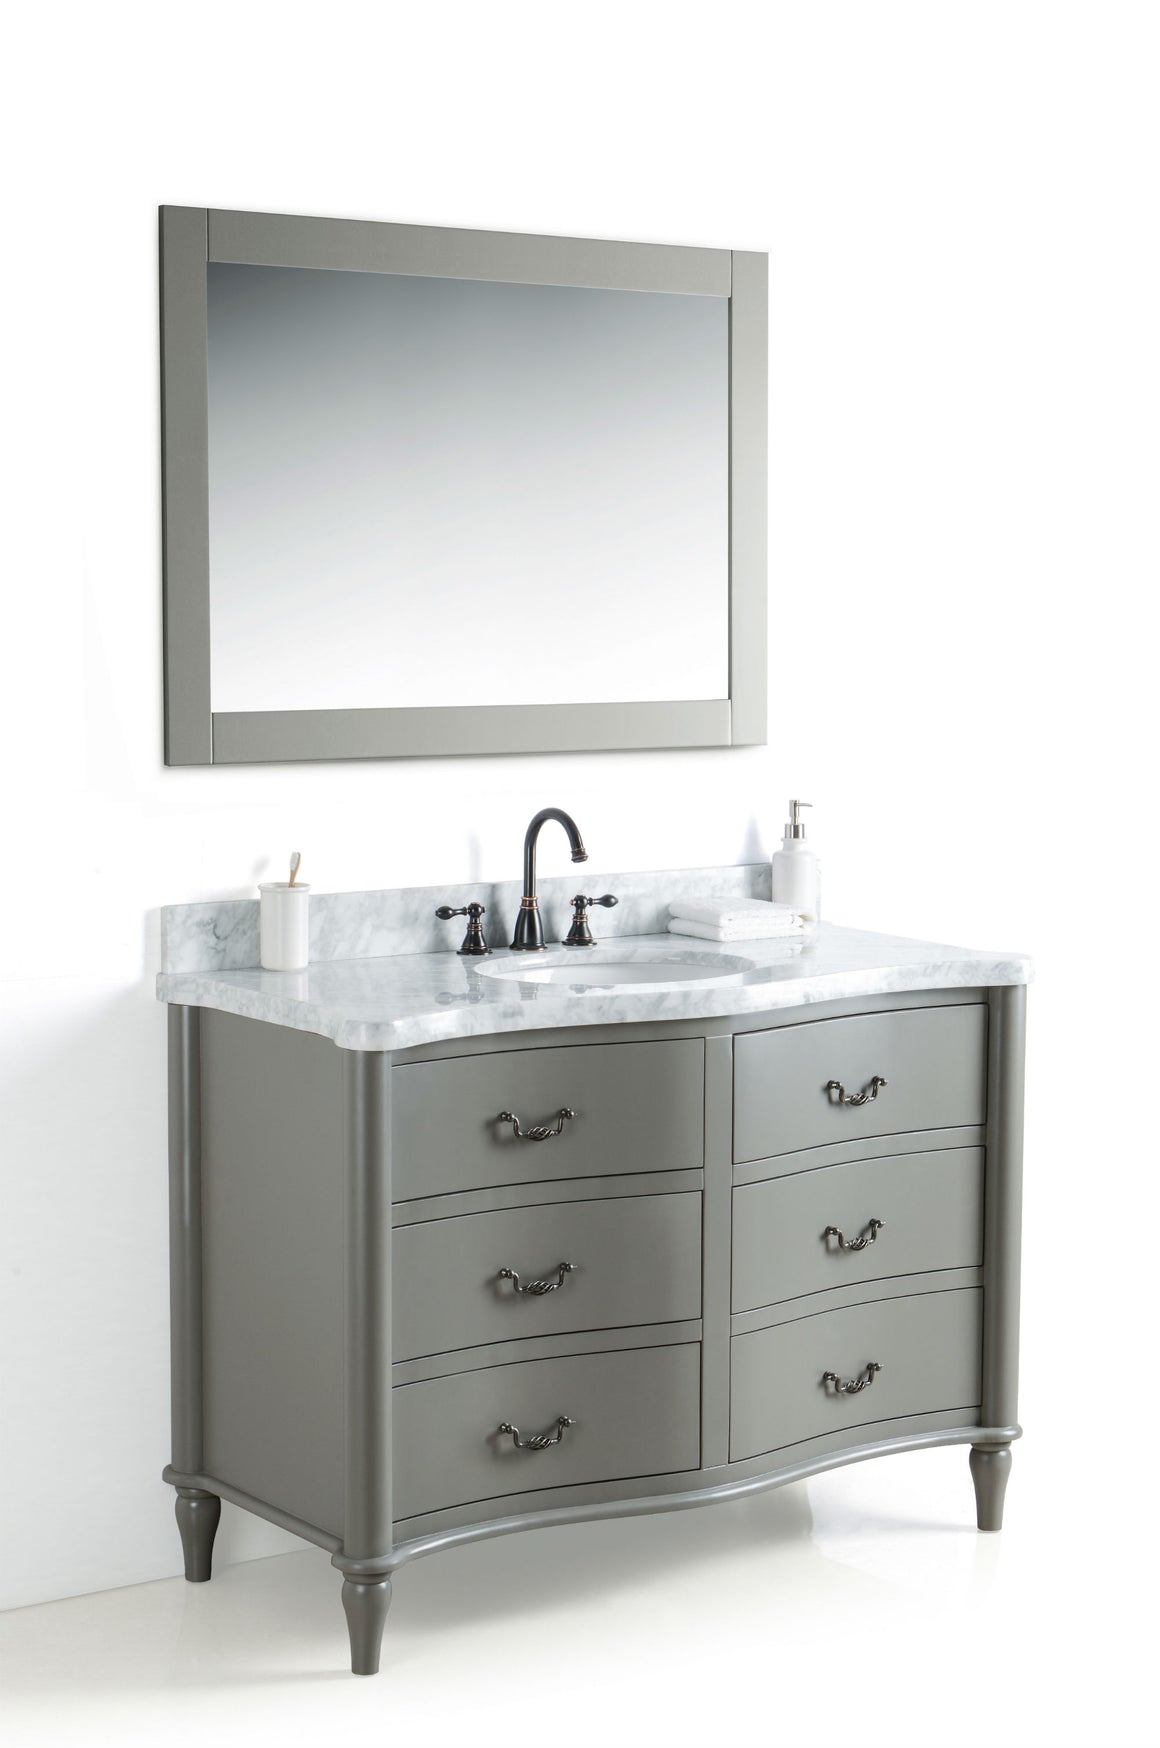 48" Bridgette Single Sink Bathroom Vanity in Grey Finish with Marble Top